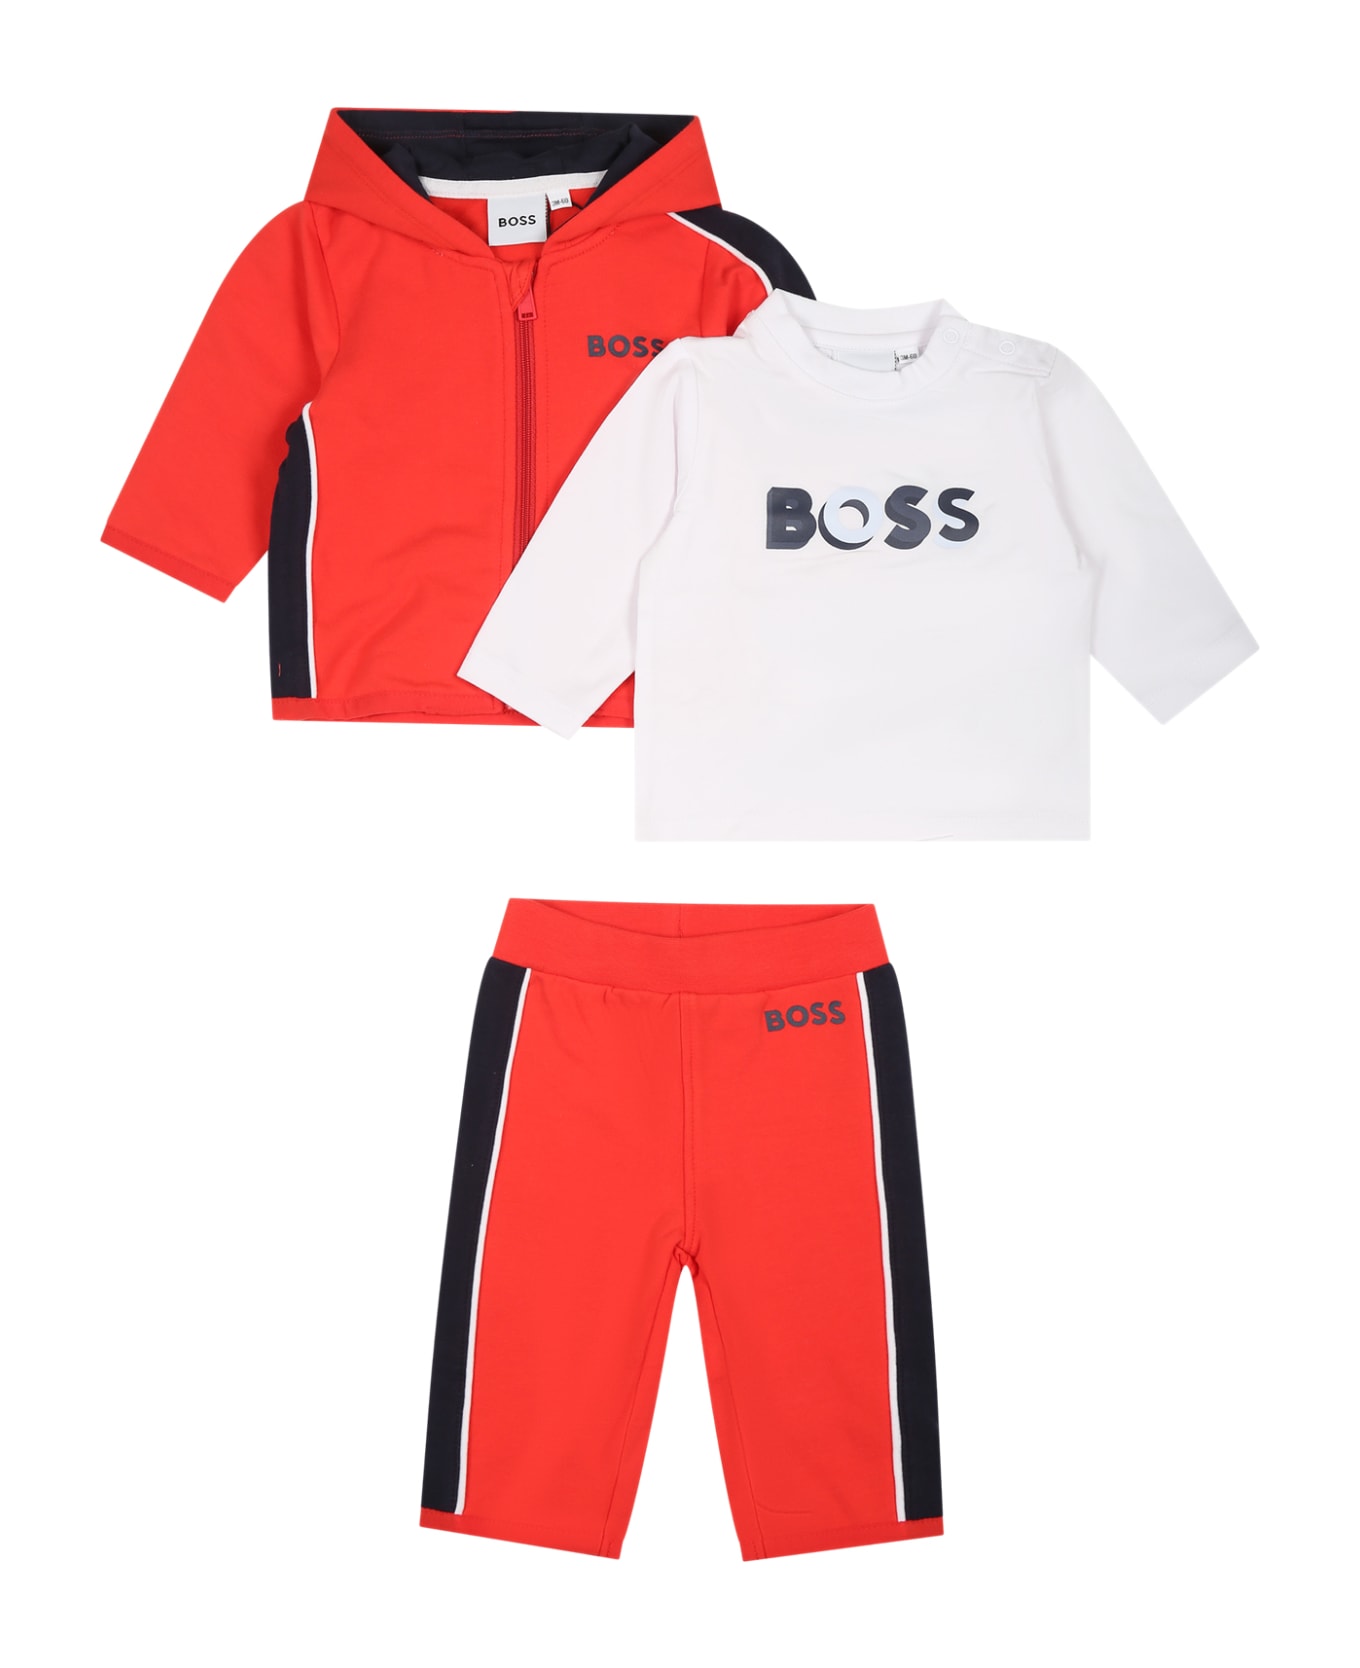 Hugo Boss Orange Set For Baby Boy With Logo - Orange ボトムス